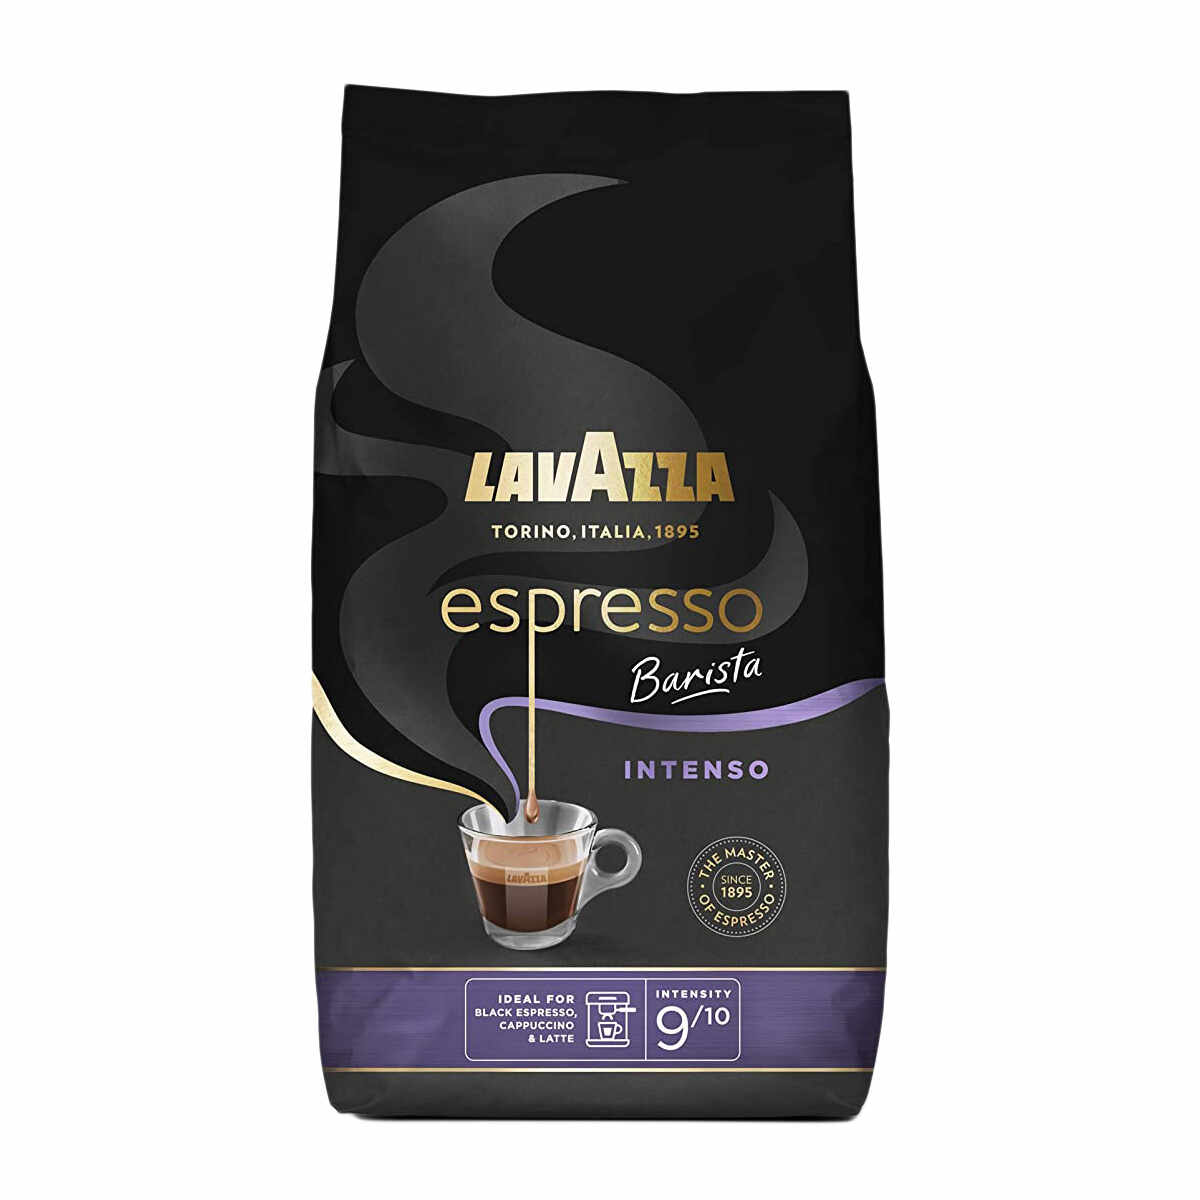 Lavazza Espresso Barista Intenso cafea boabe 1 kg